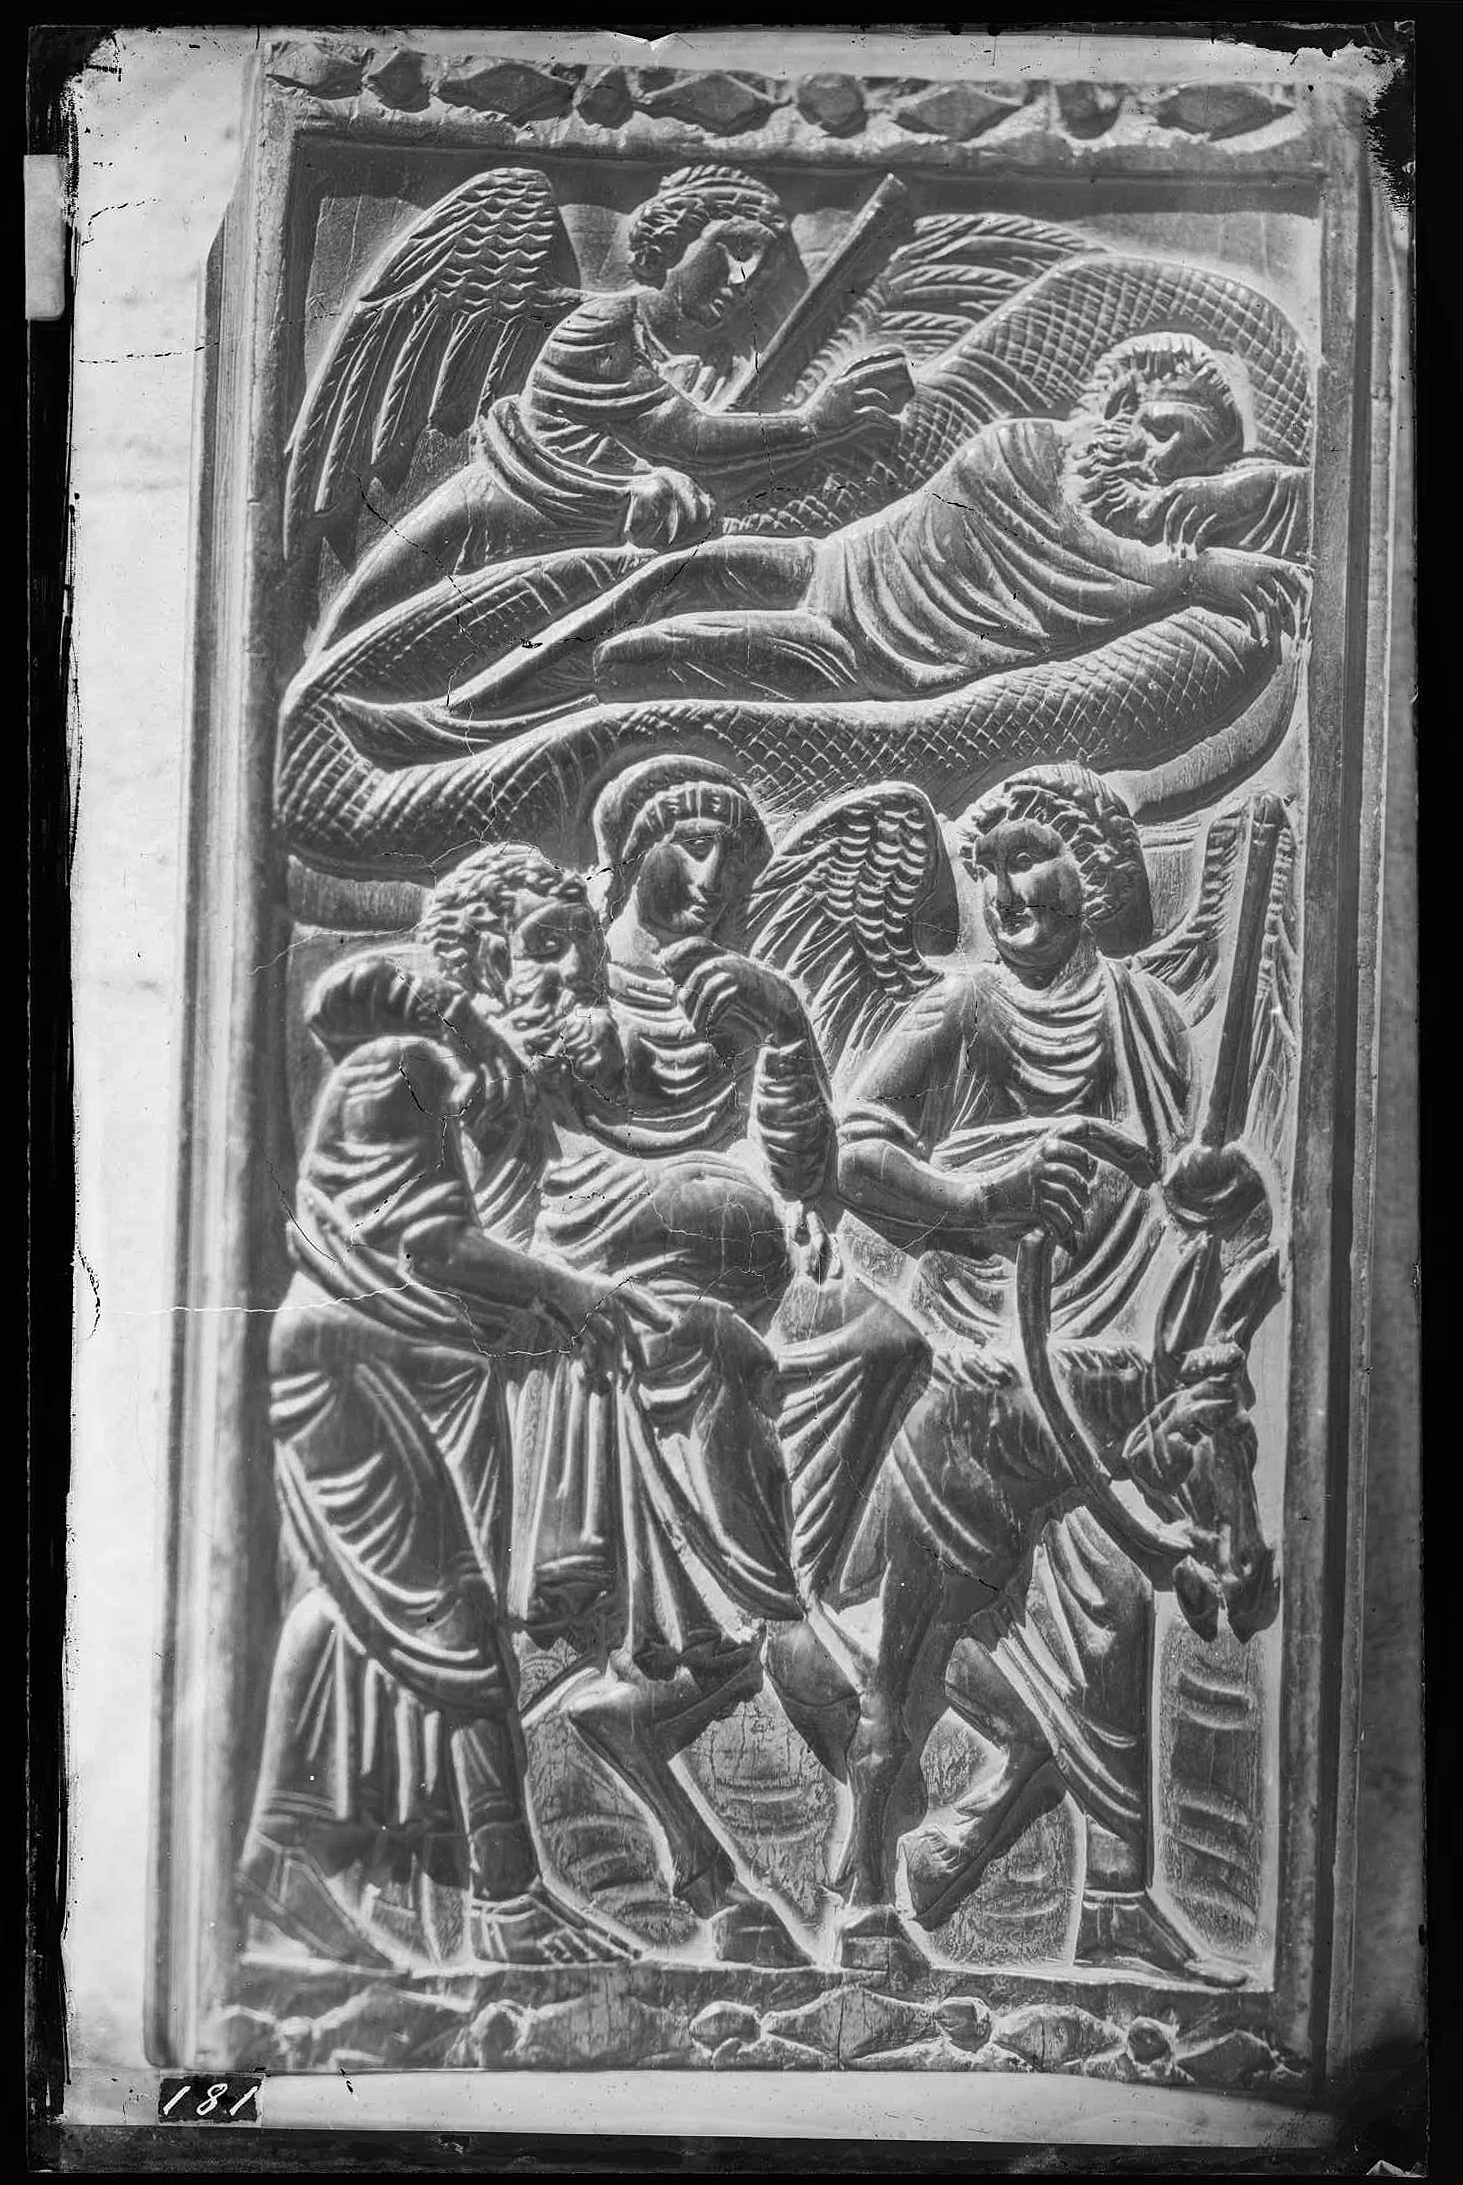 Scultura religiosa - Cattedra episcopale - Schienale, fronte anteriore - Dettaglio (negativo) di Ricci, Luigi - manifattura costantinopolitana (XIX)